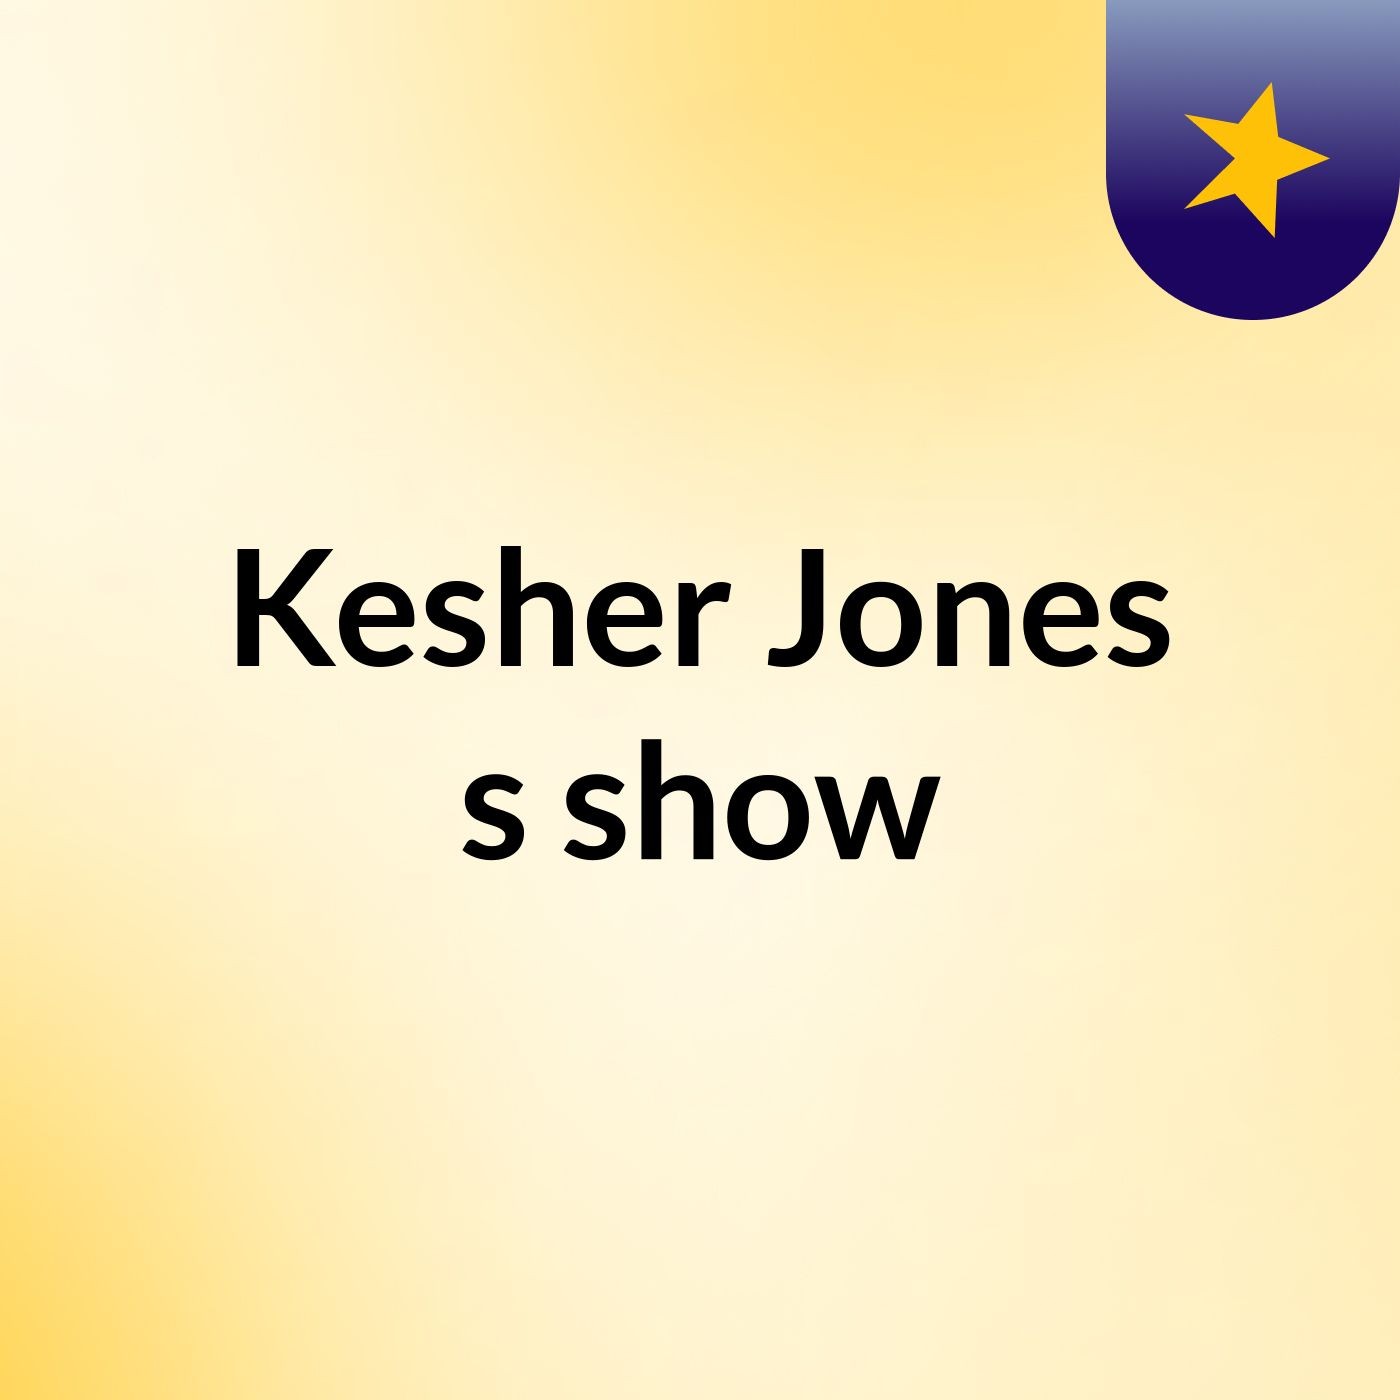 Episode 4 - Kesher Jones's show